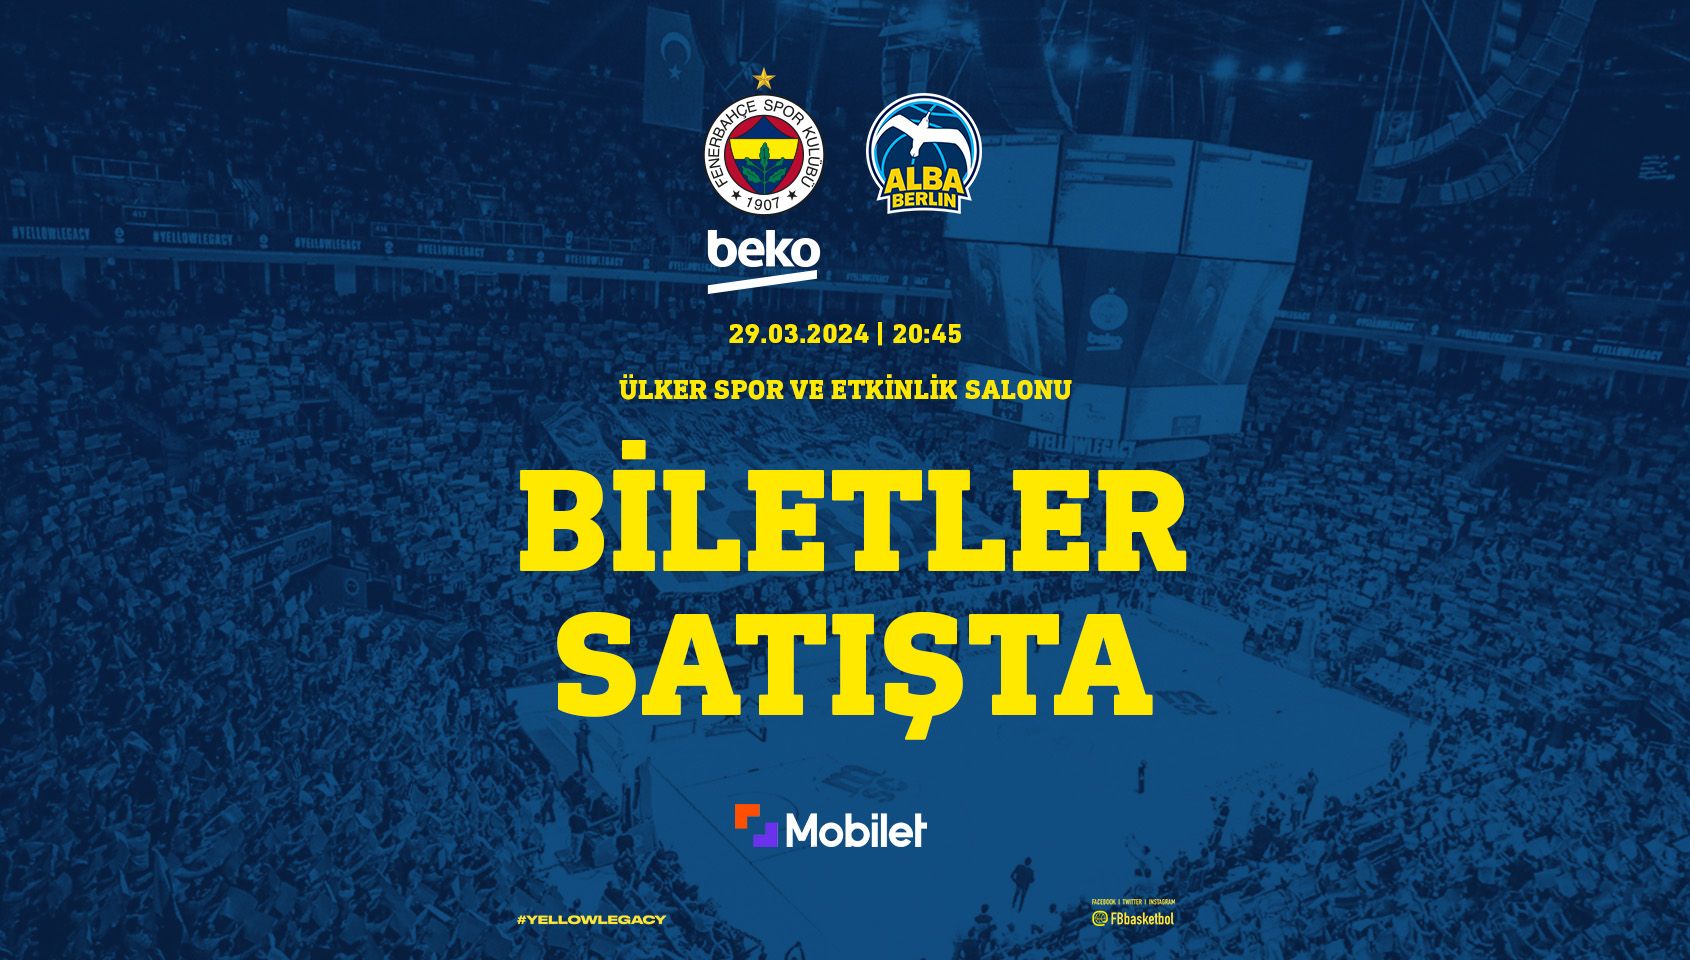 Fenerbahçe Beko –Alba Berlin - Ülker Spor ve Etkinlik Salonu - İstanbul